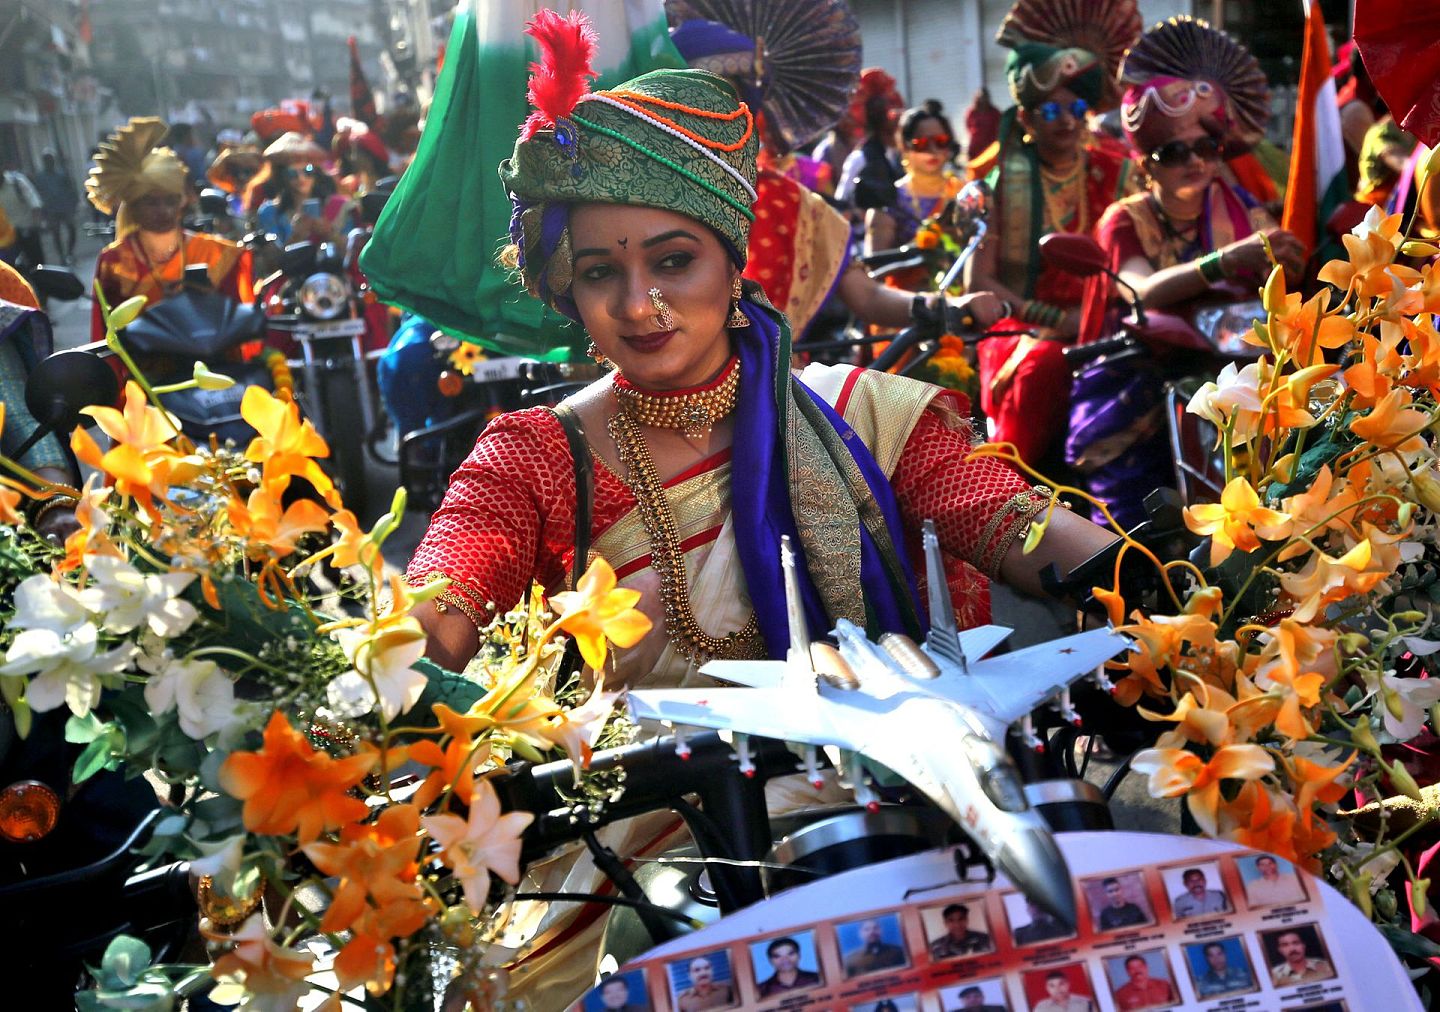 印度传统服饰中的丝质品依赖从中国进口的原材料。图为身着传统服饰的女性参加庆祝古蒂·帕德瓦节的活动。（路透社）